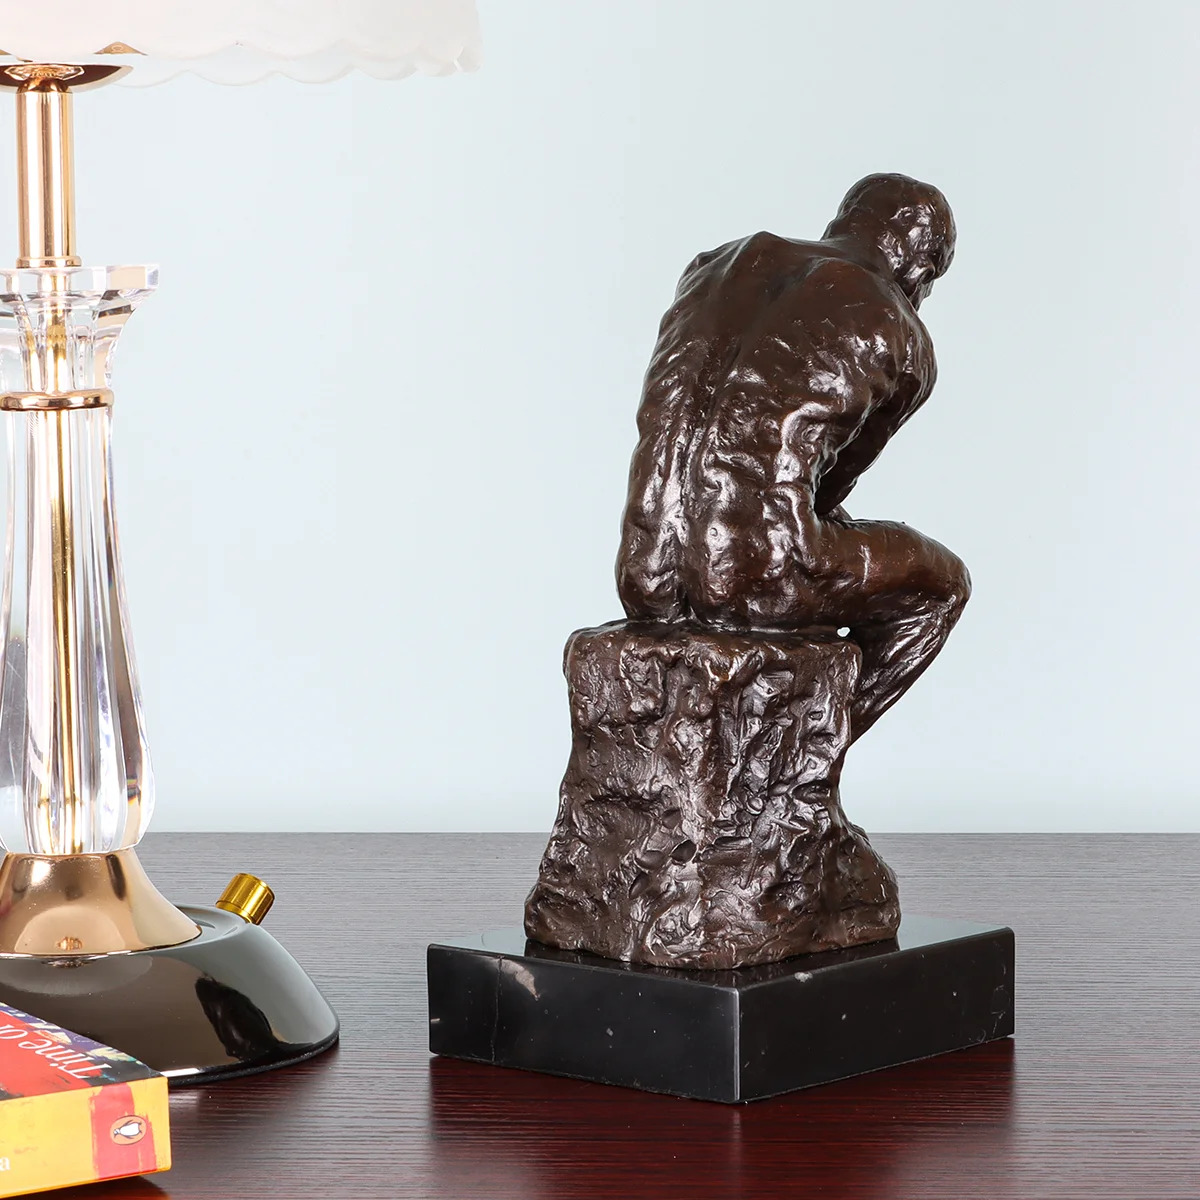 Estatua de The Thinker en bronce retro fundido en frío de primera calidad cobre 9.64 pulgadas estatua decorativa inspirada en el pensador de Rodin diseño de figura coleccionable de grado premium 